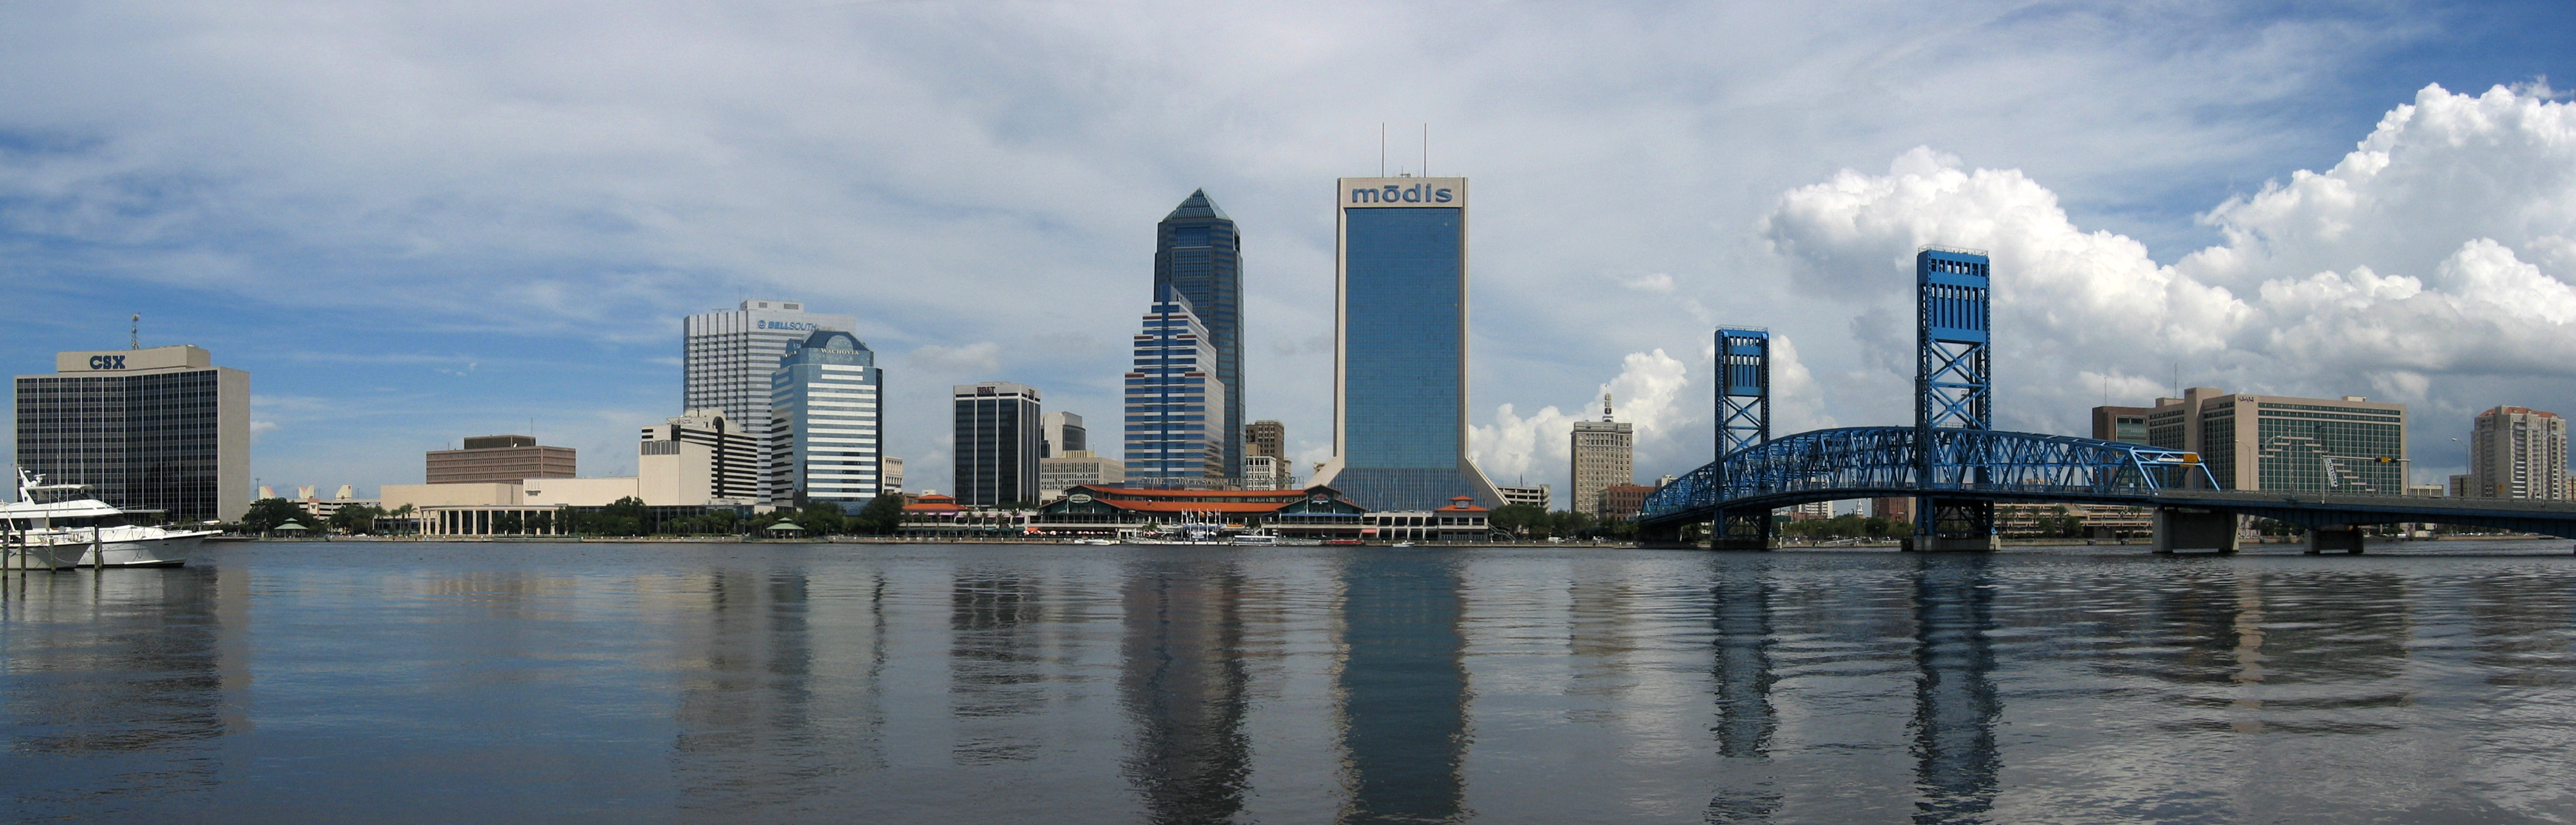 Jacksonville_Skyline_Panorama_3.jpg